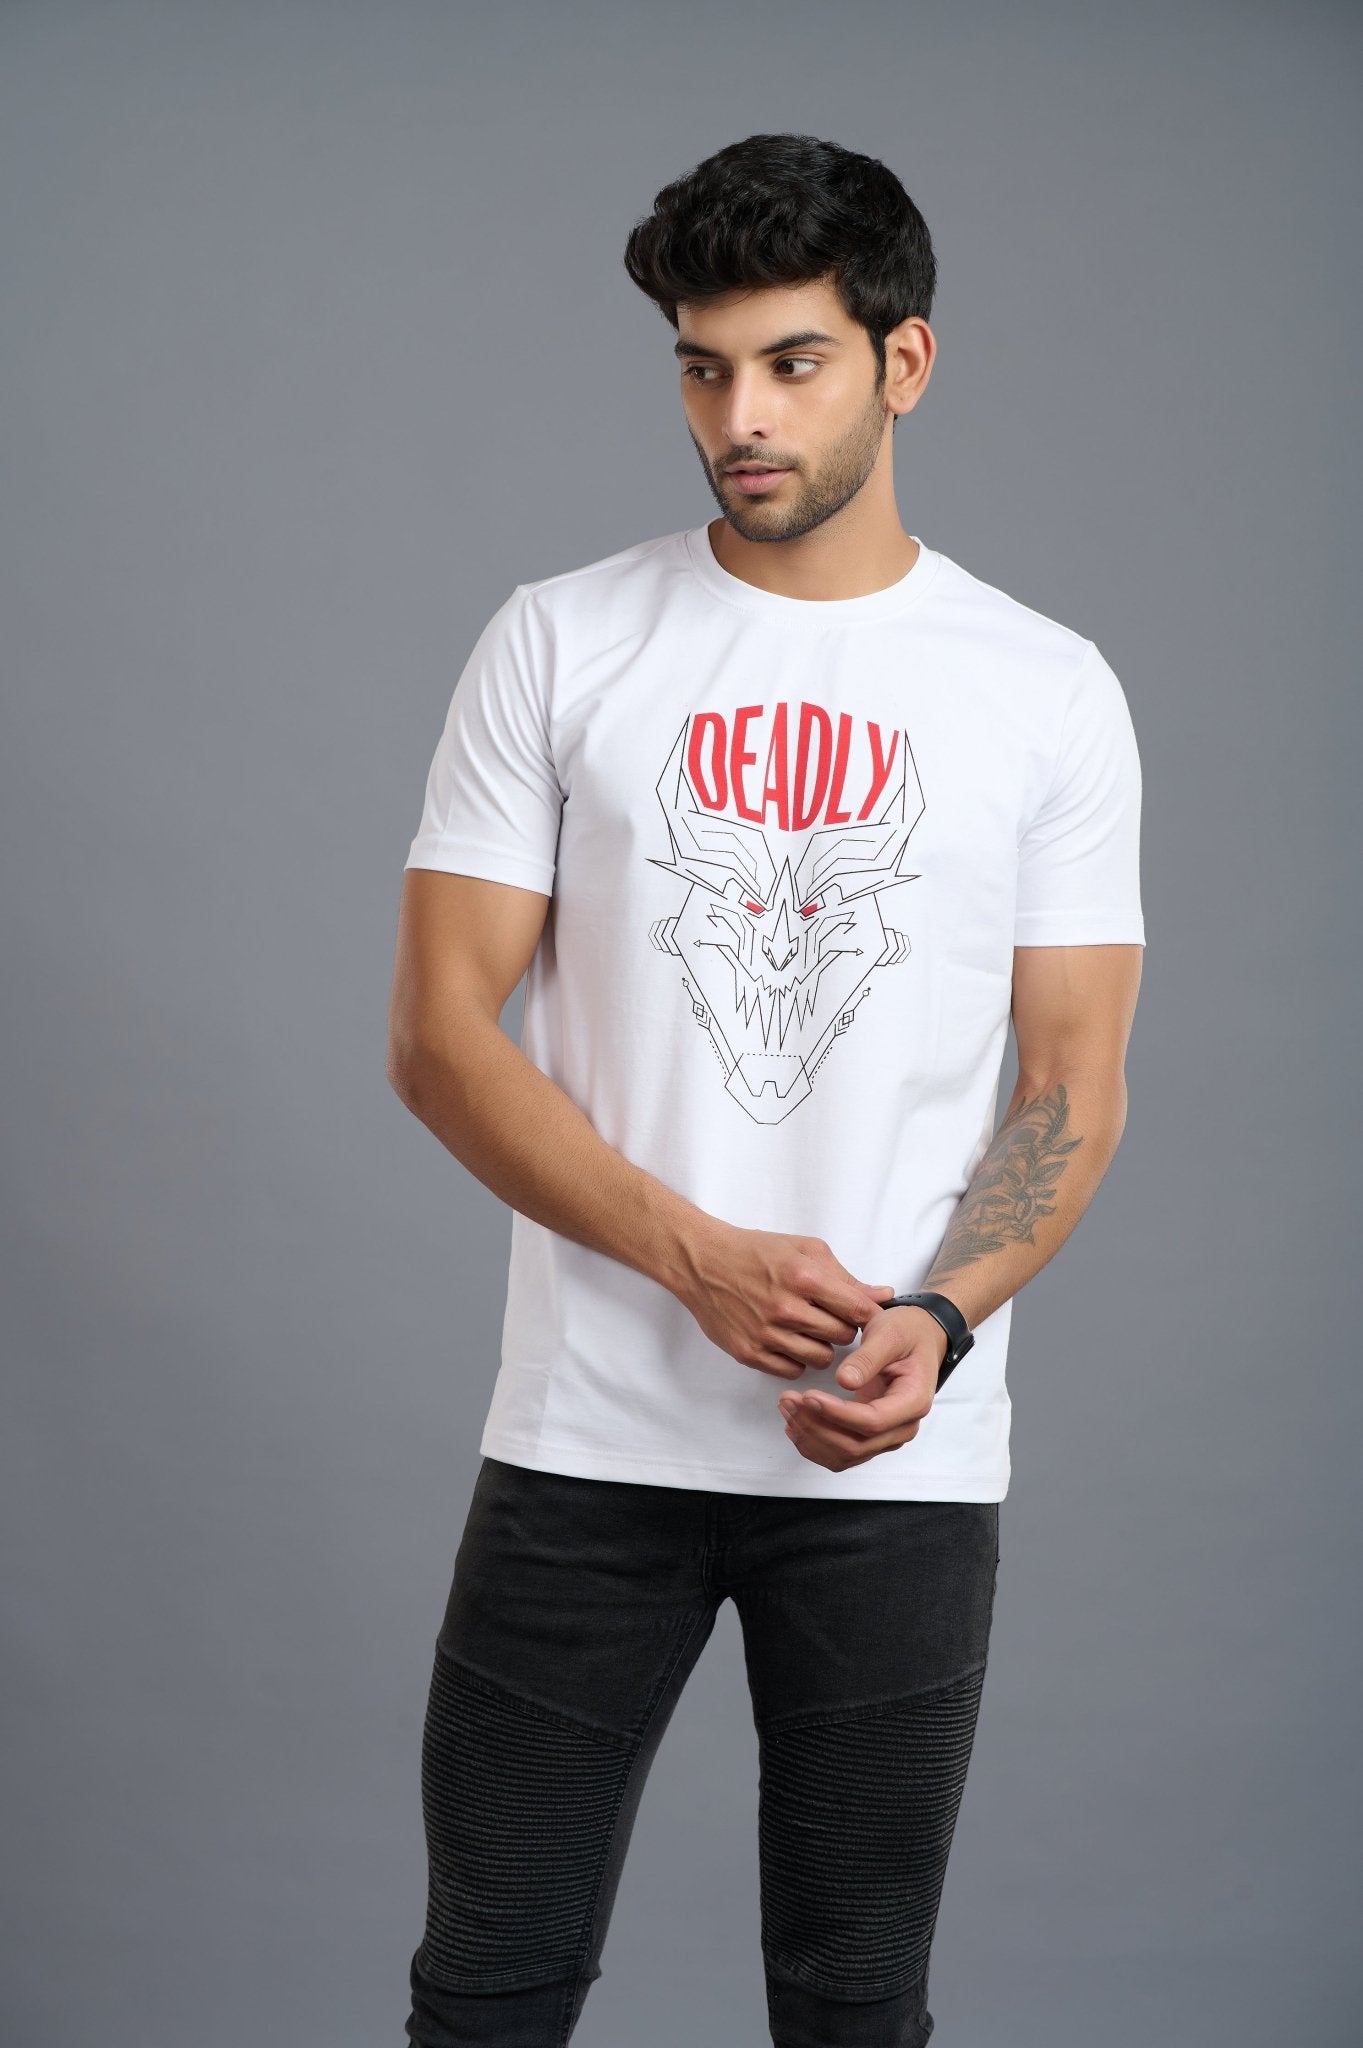 Deadly Printed White T-Shirt for Men - Go Devil